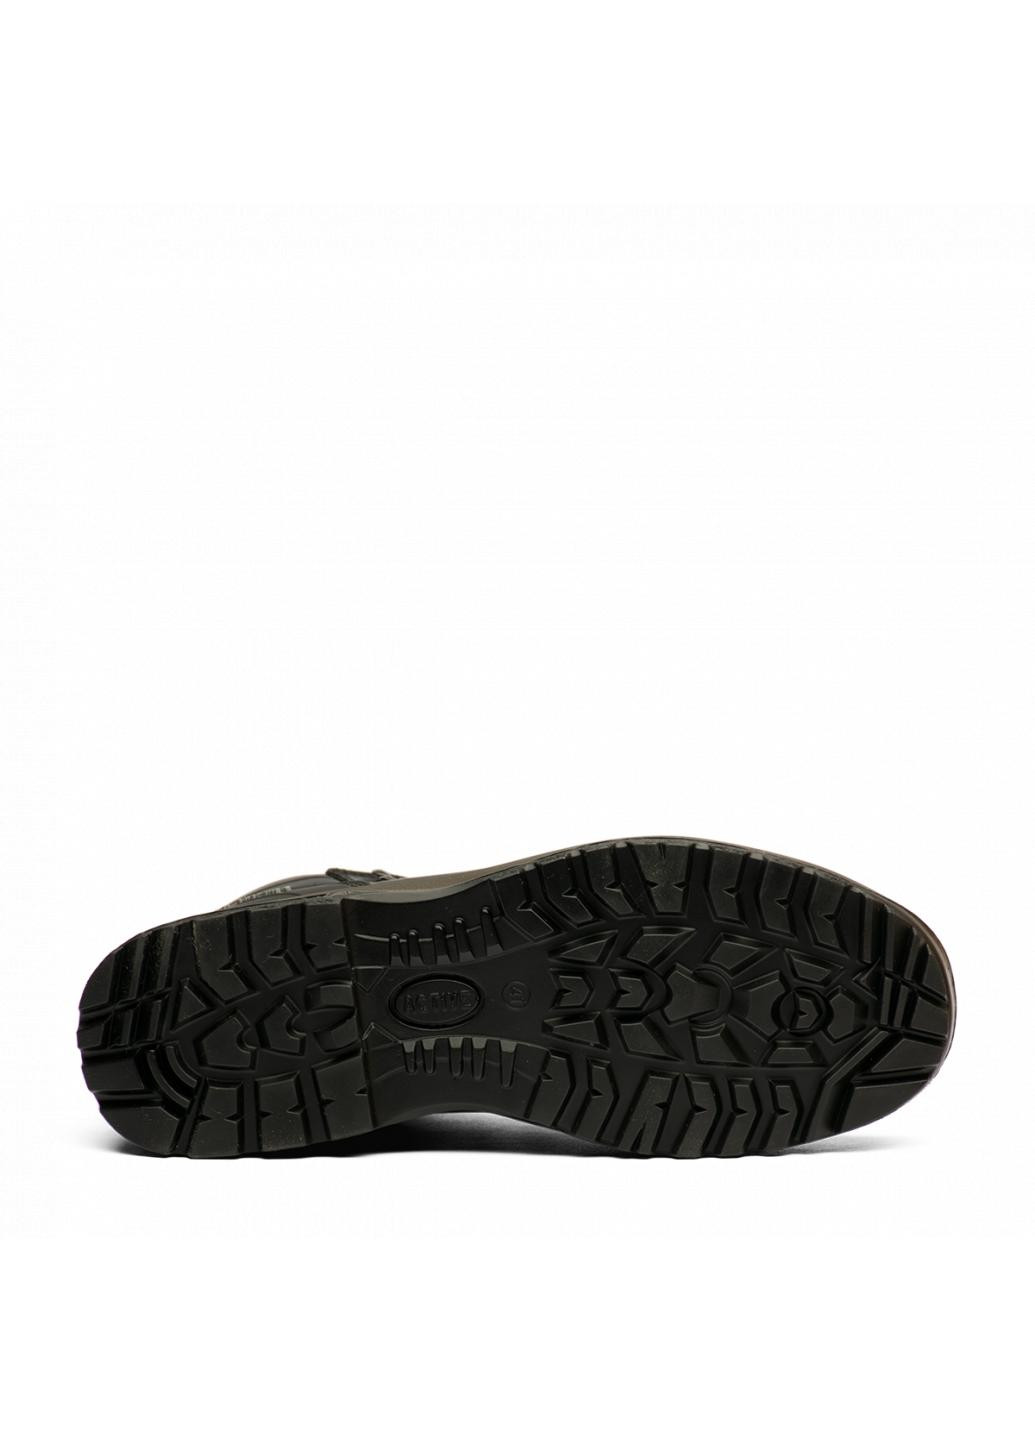 Черные зимние ботинки 13205-d27 Grisport